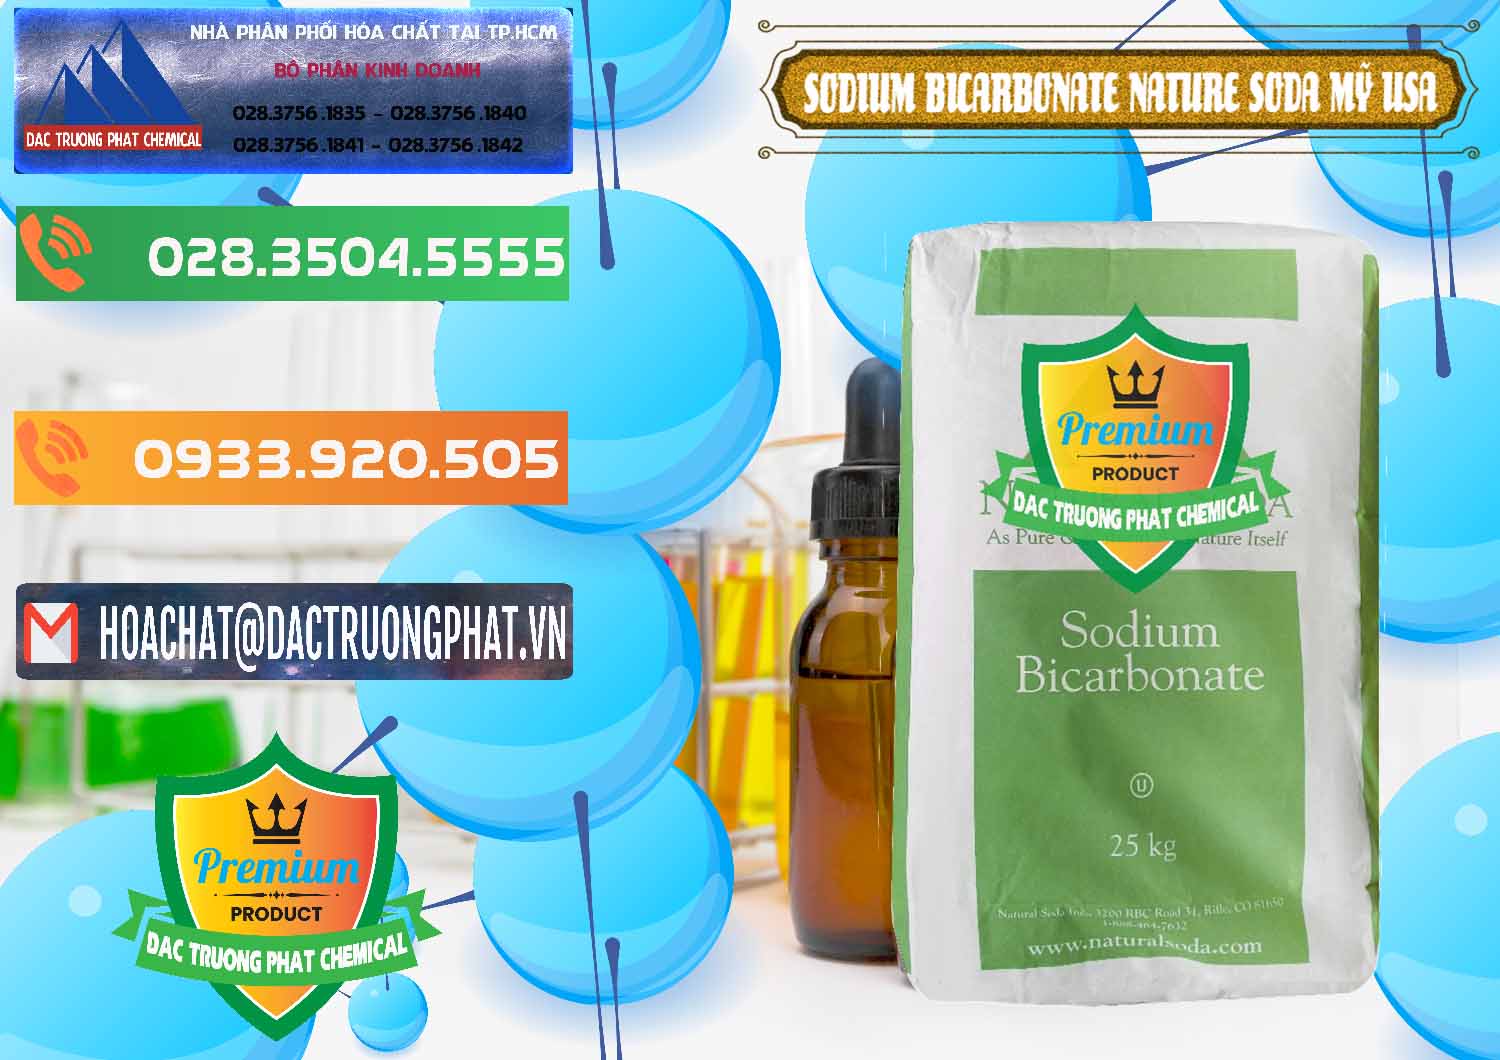 Cty bán ( phân phối ) Sodium Bicarbonate – Bicar NaHCO3 Food Grade Nature Soda Mỹ USA - 0256 - Công ty chuyên phân phối & nhập khẩu hóa chất tại TP.HCM - hoachatxulynuoc.com.vn